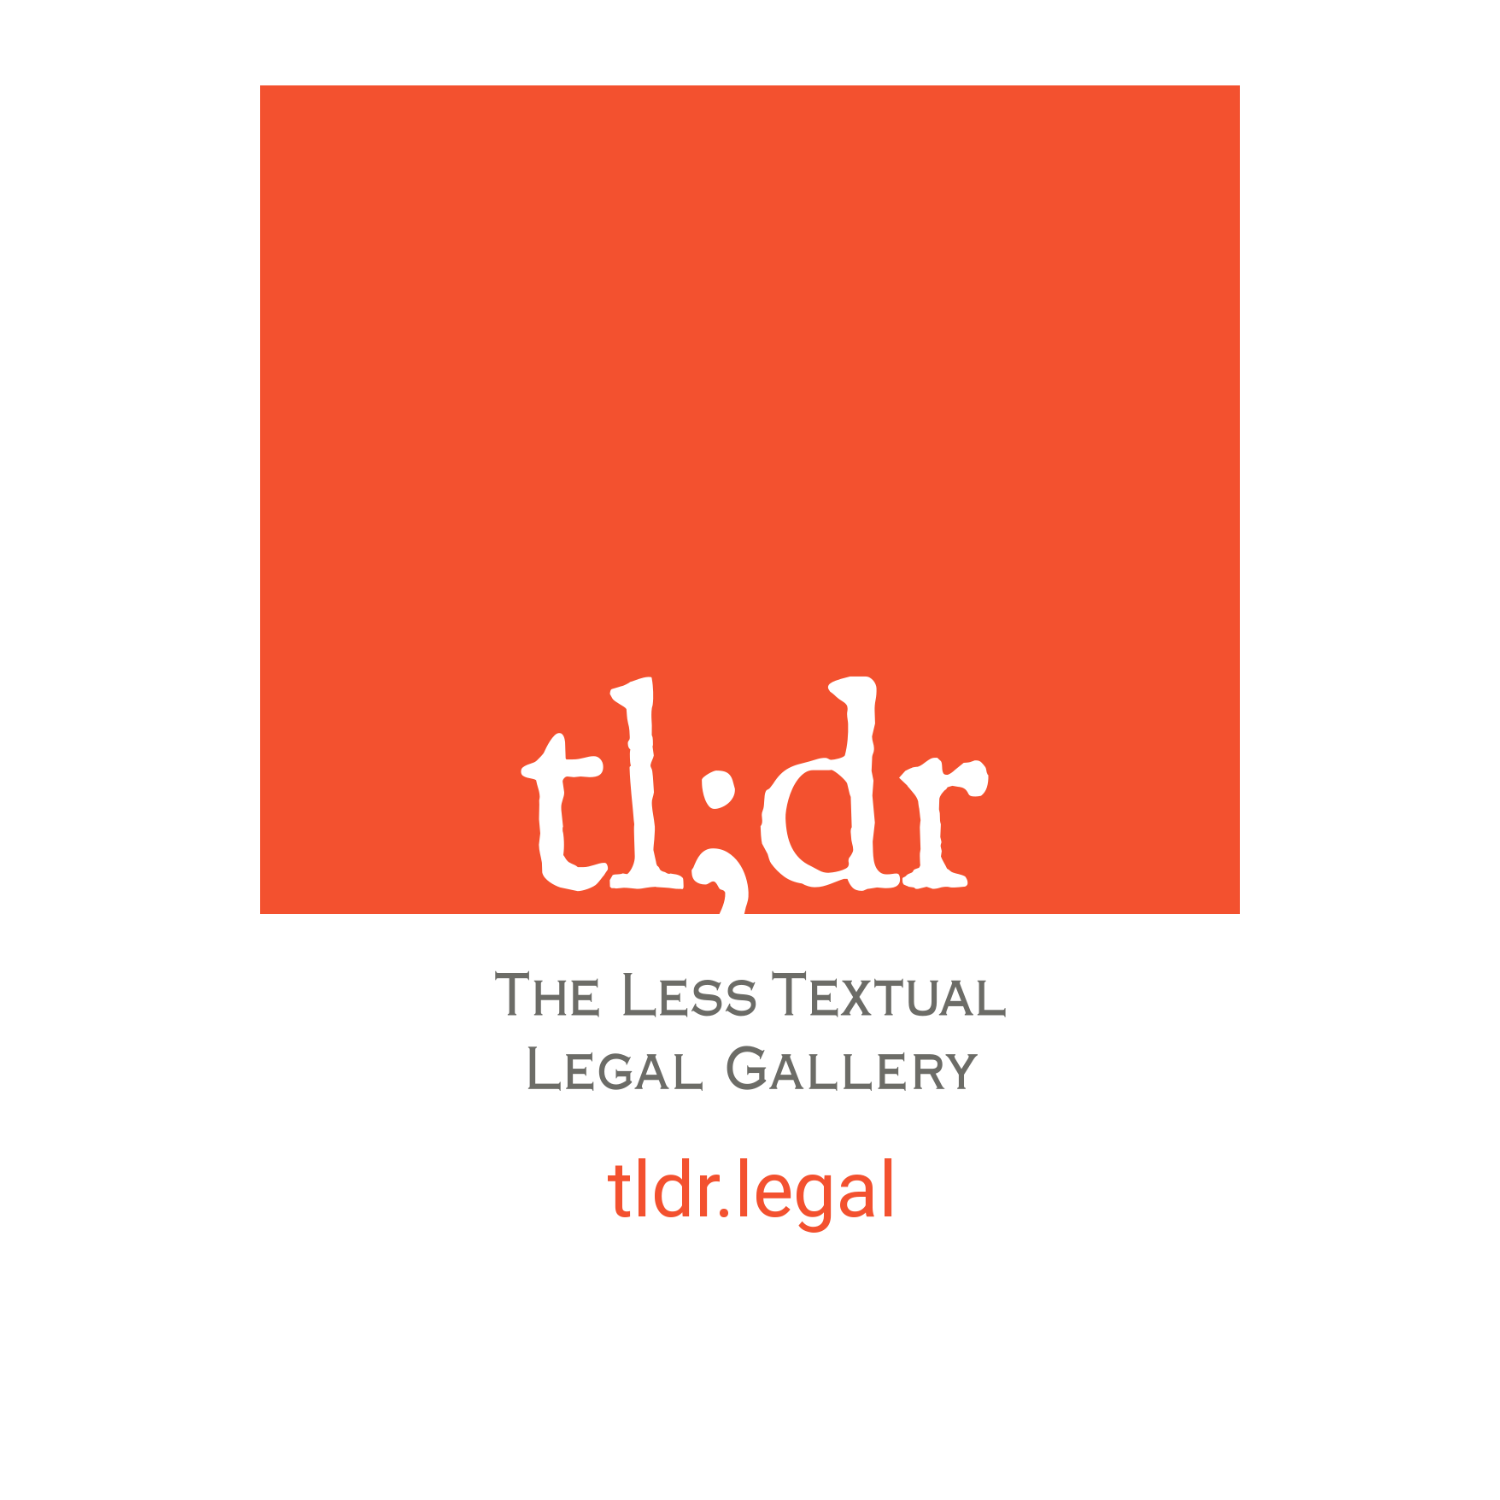 tl;dr legal logo.png